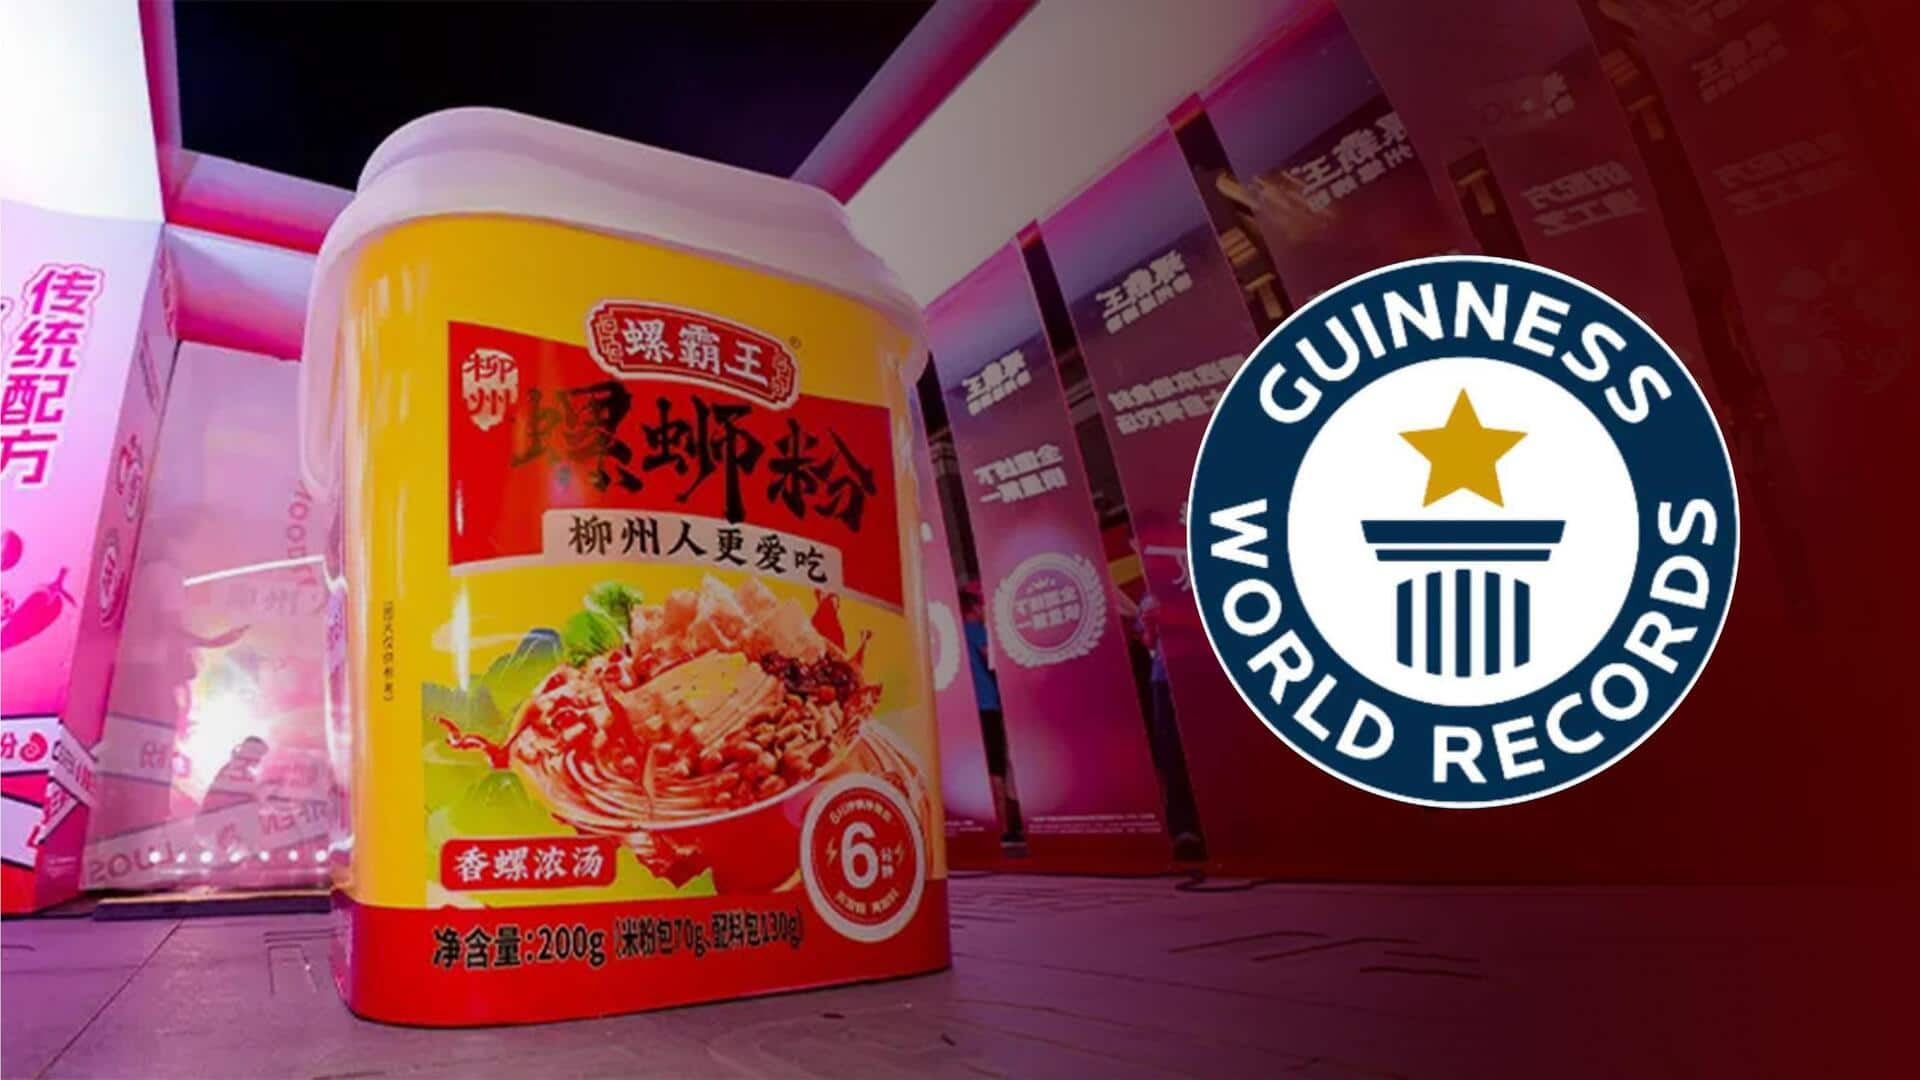 चीन: 4 फुट से लंबा है 'दुनिया का सबसे बड़ा इंस्टेंट नूडल कप', बेझिझक खाइये